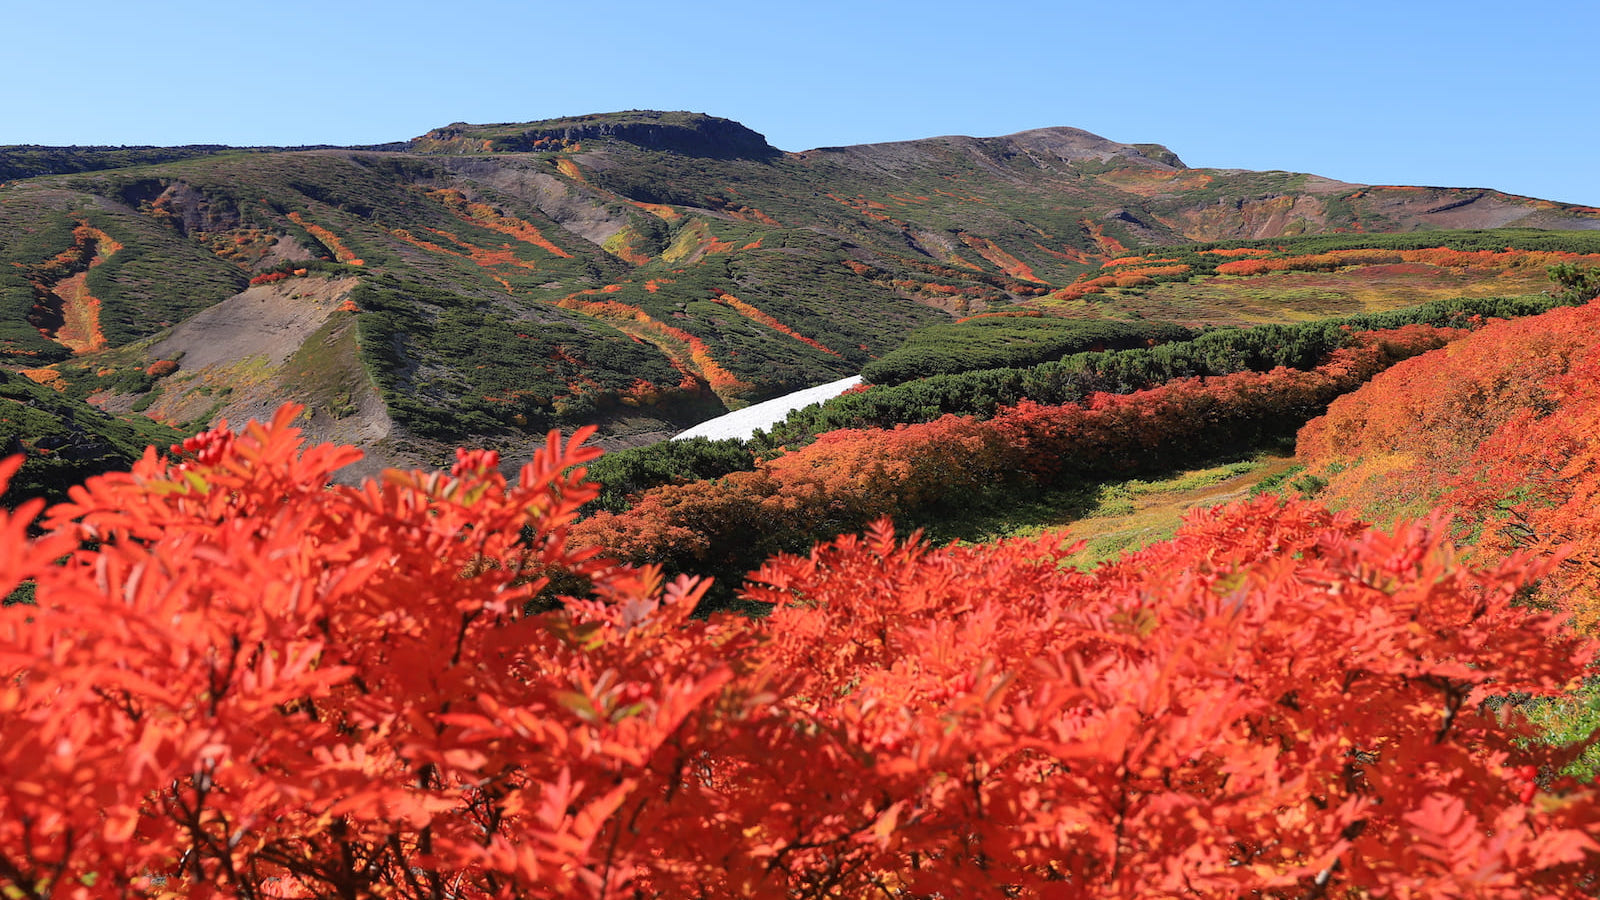 日本一早い紅葉を求めて。北海道の屋根・大雪山「御鉢平一周コース」ぐるりレポート